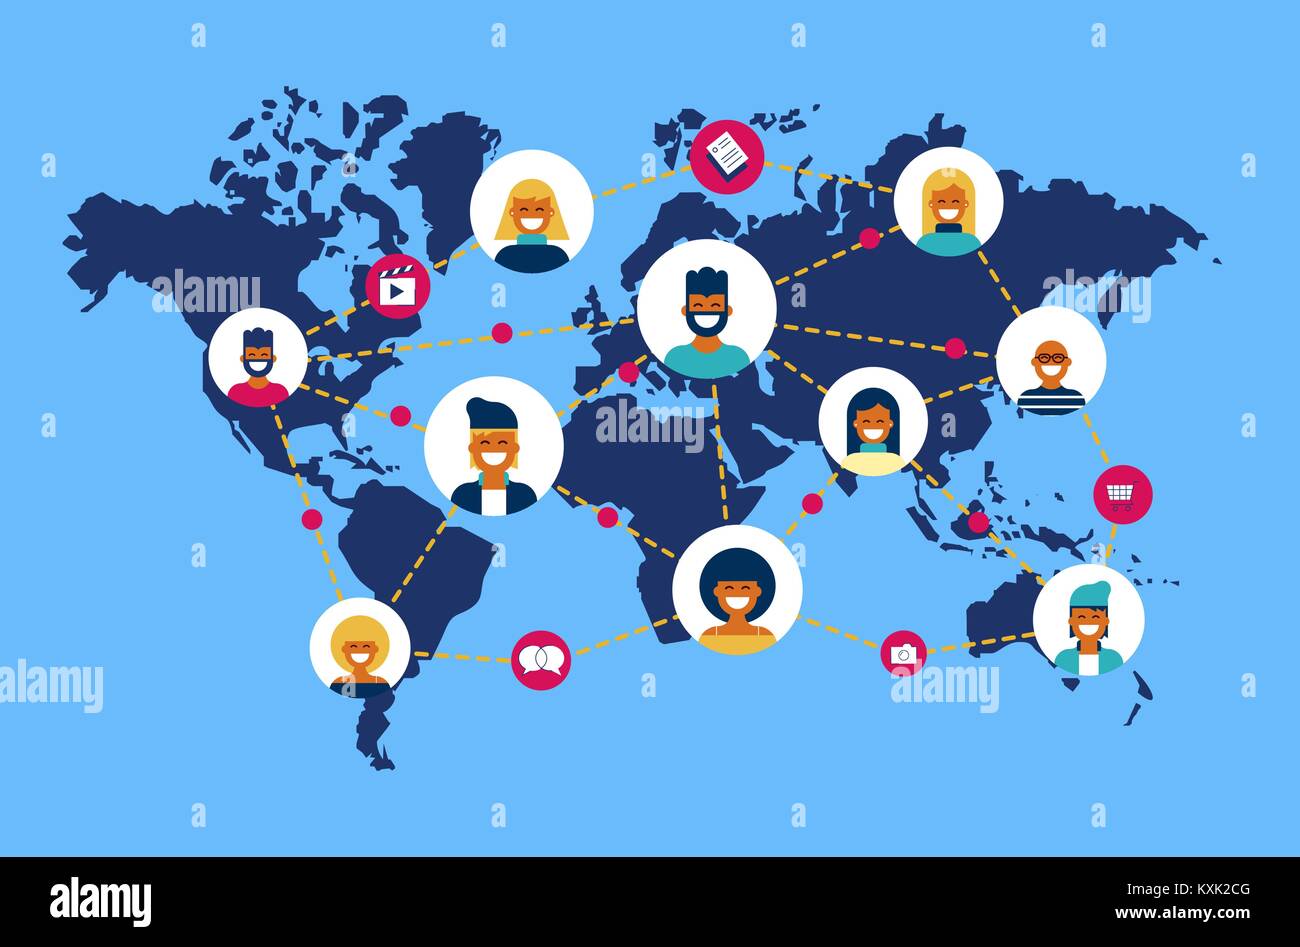 Réseau social connexion monde concept illustration. Équipe de diverses personnes en ligne faisant l'activité internet dans le monde entier dans la carte. Vecteur EPS10. Illustration de Vecteur